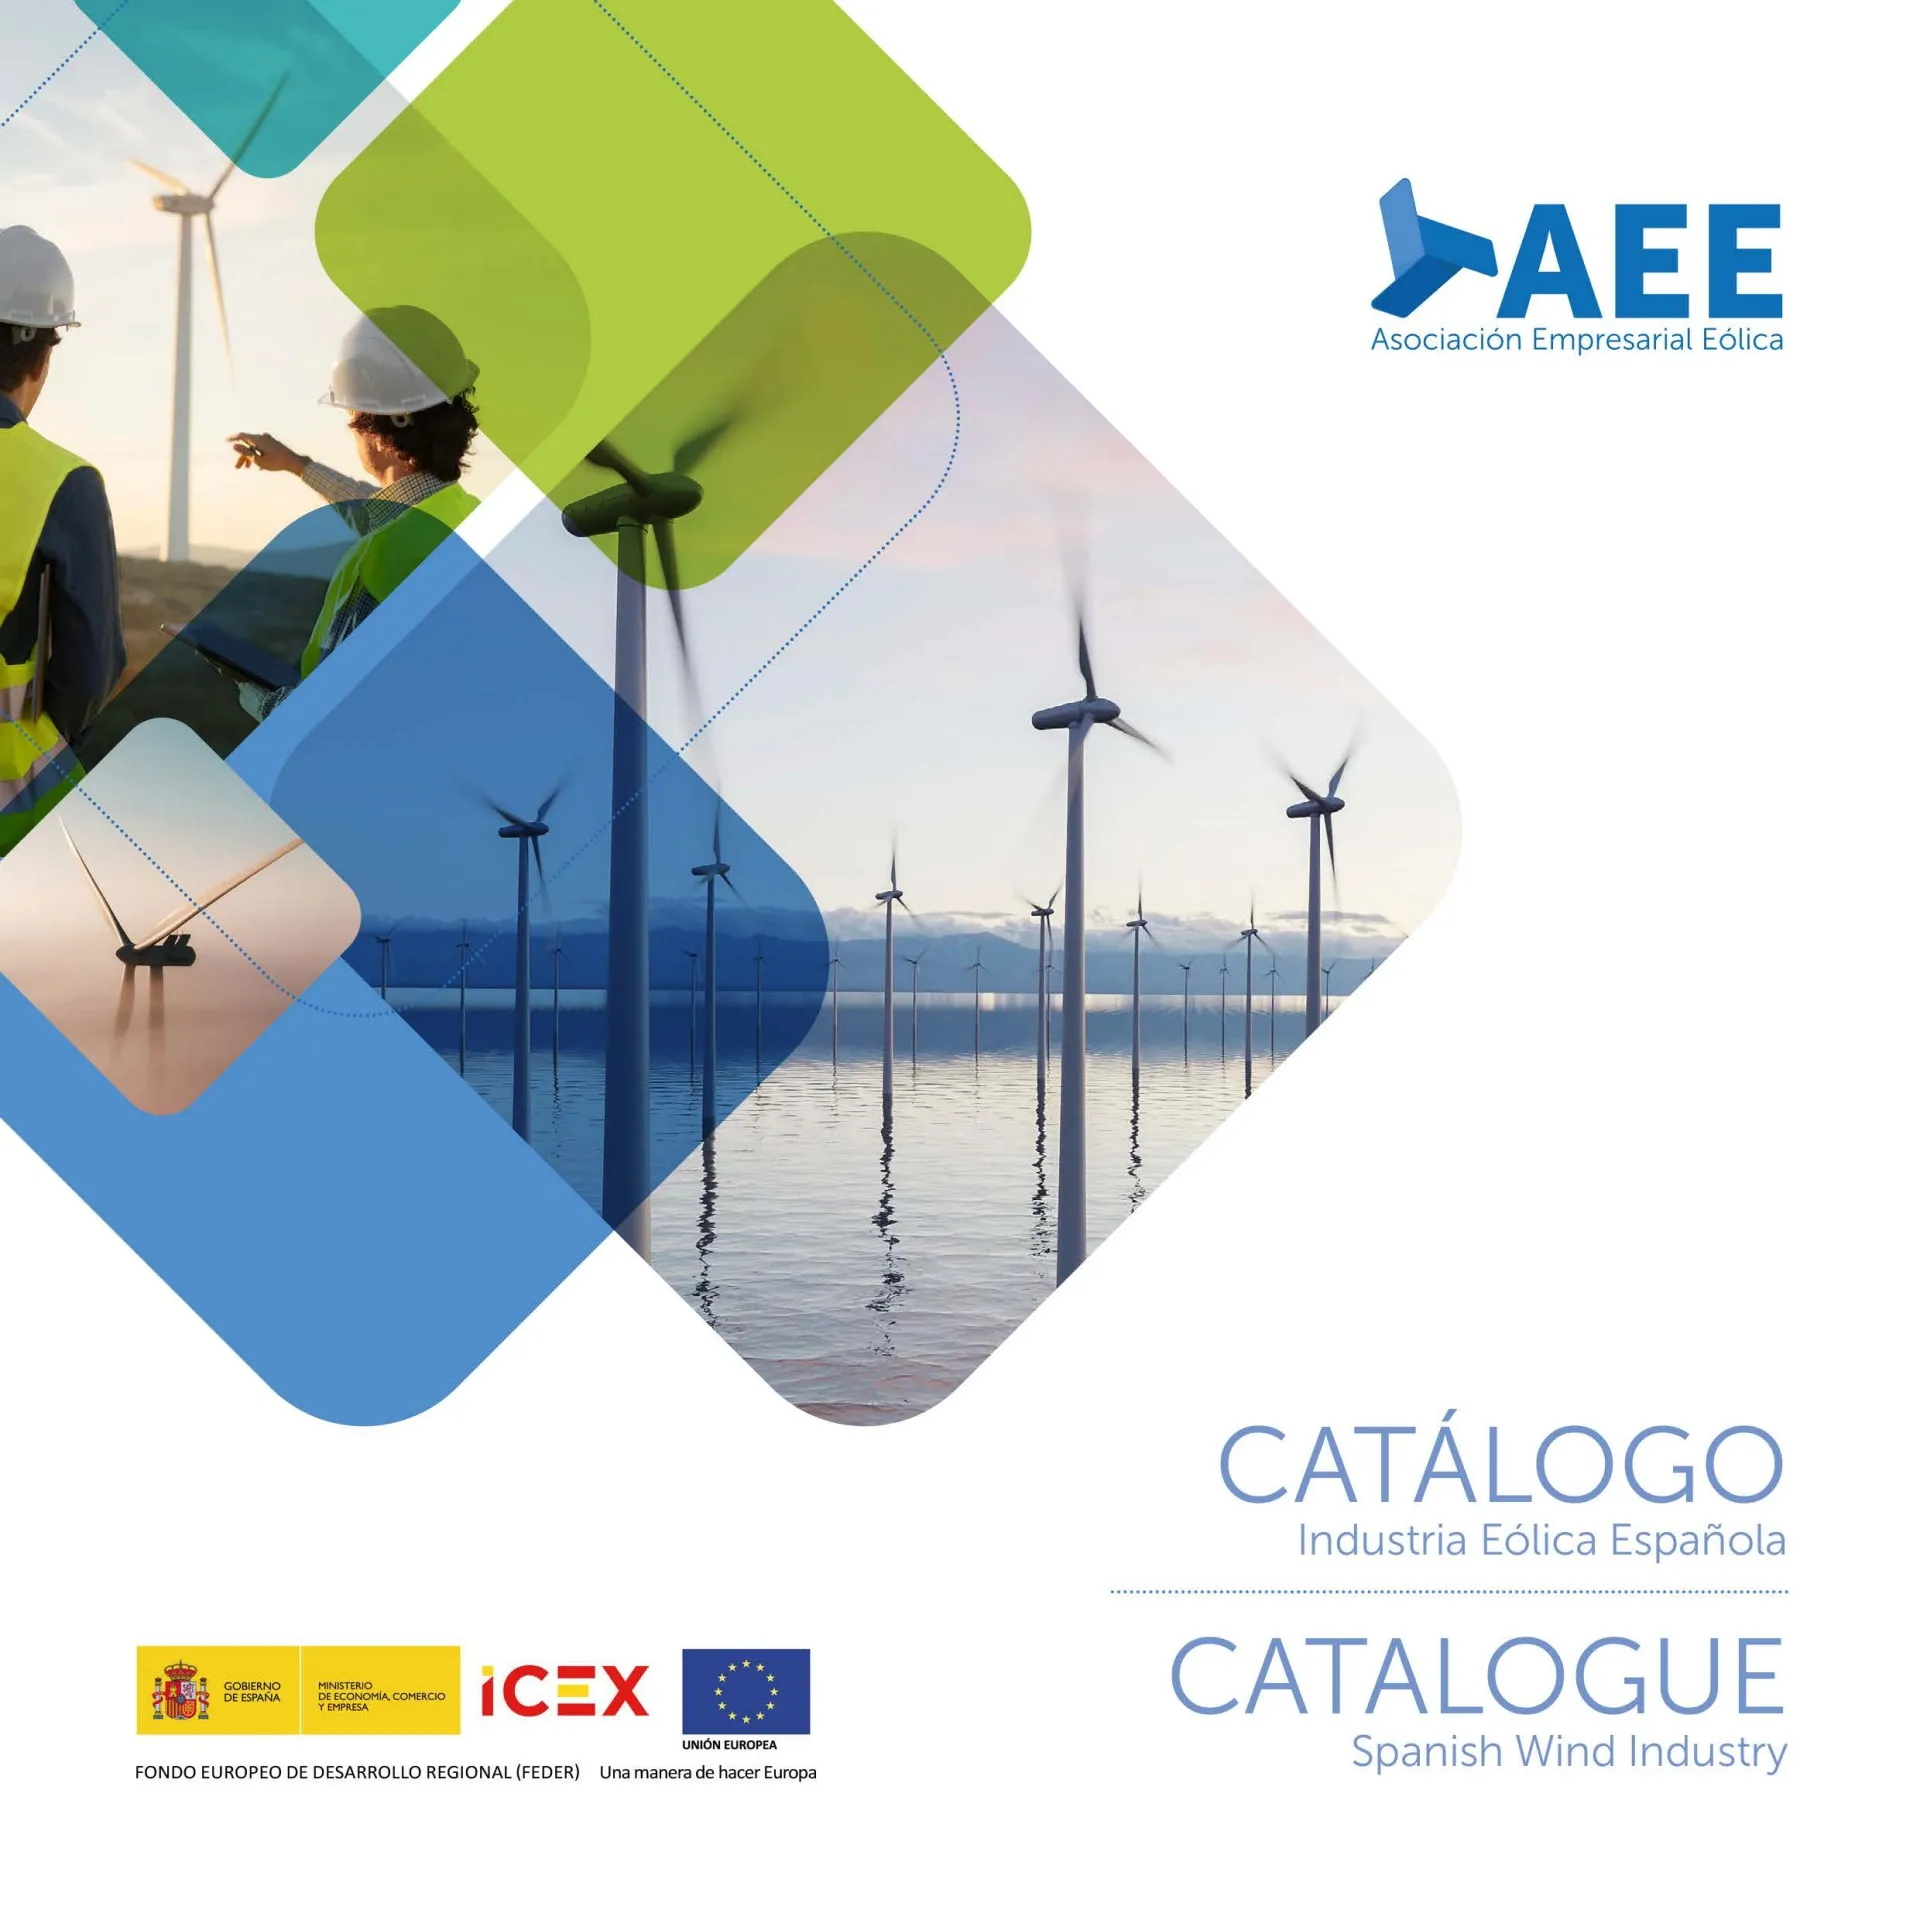 El caso de éxito de la cadena de valor del sector eólico español, reflejado en el Catálogo de la Industria Eólica Española